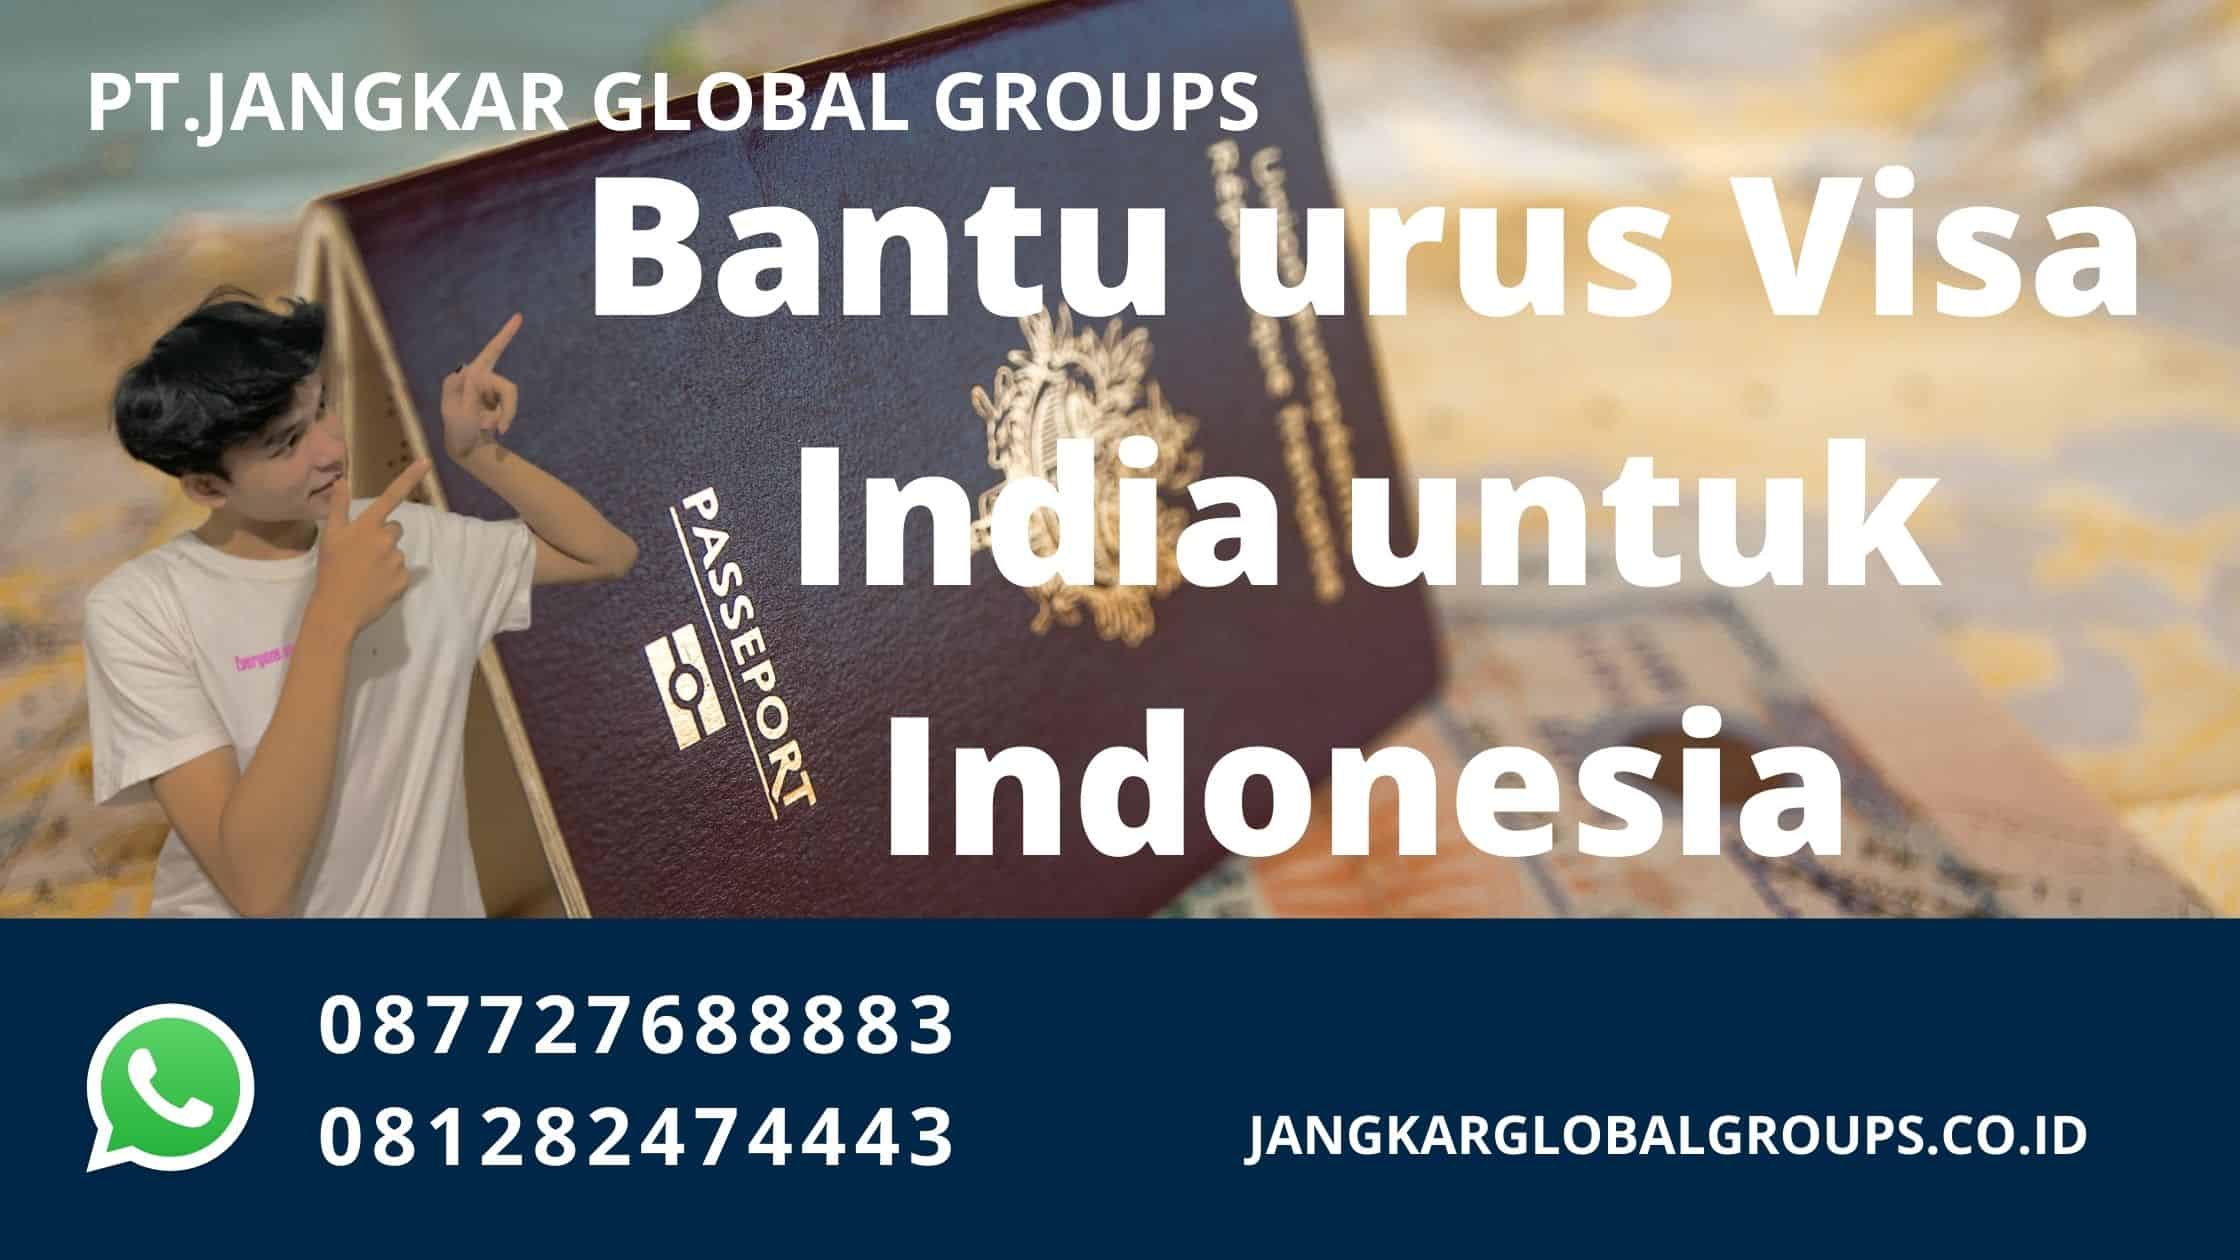 Bantu urus Visa India untuk Indonesia